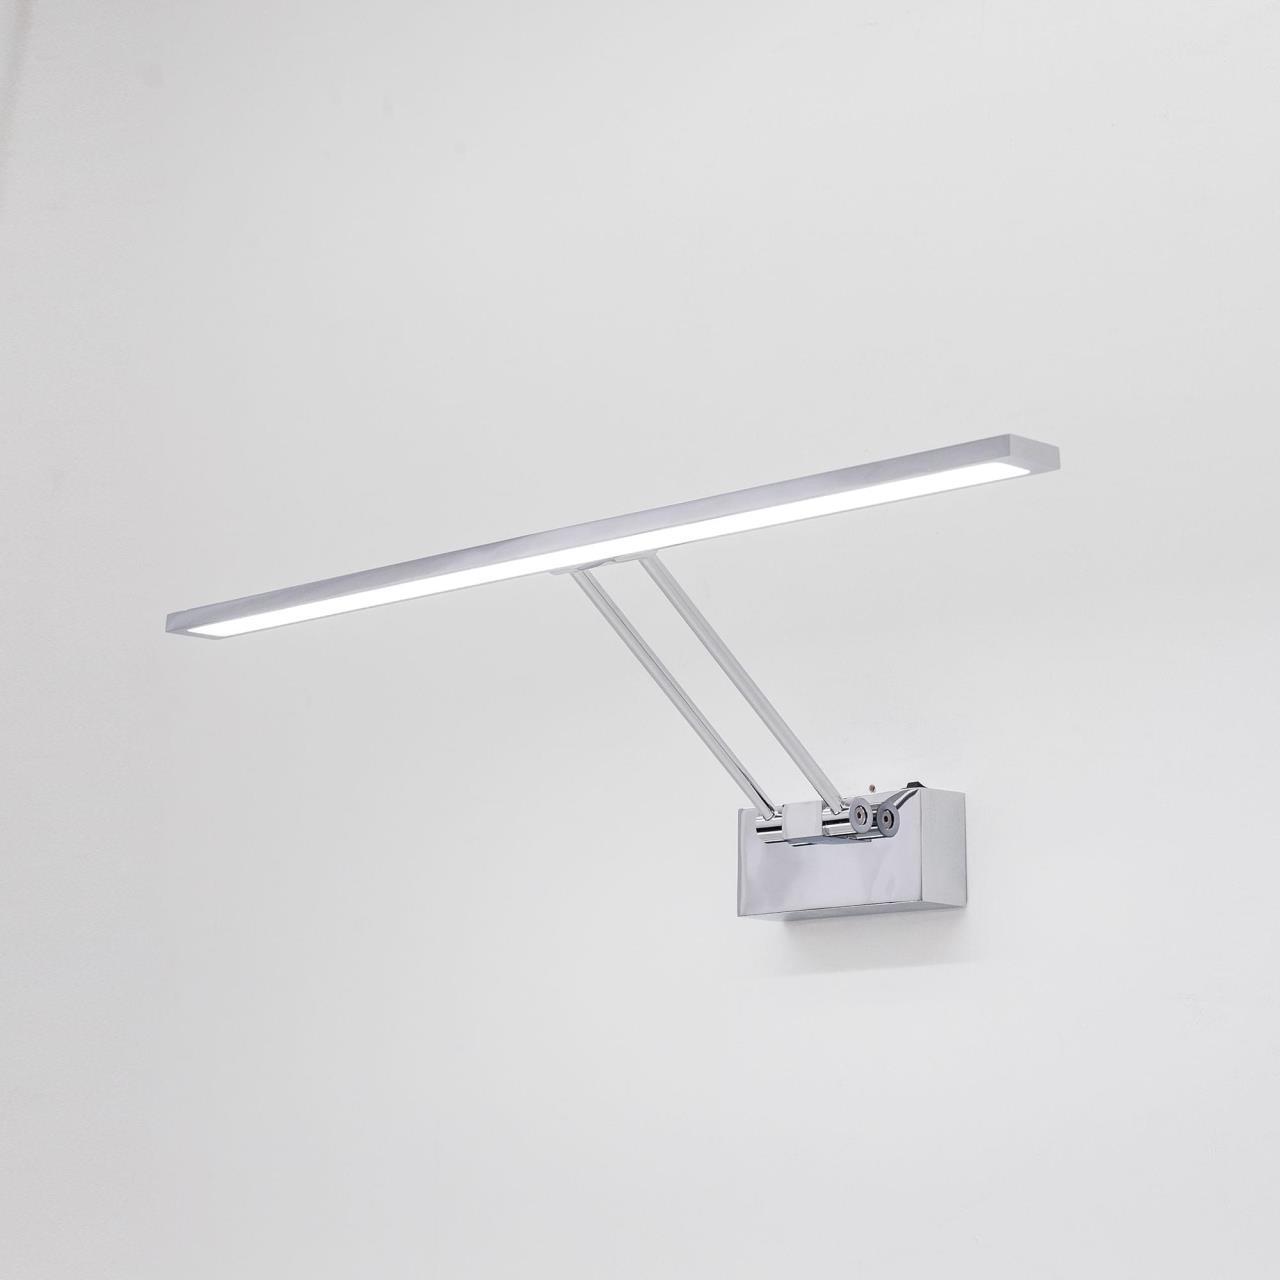 Настенный светодиодный светильник для подсветки картин Citilux Визор CL708501, LED 12W 3600K 900lm, хром, металл - фото 4